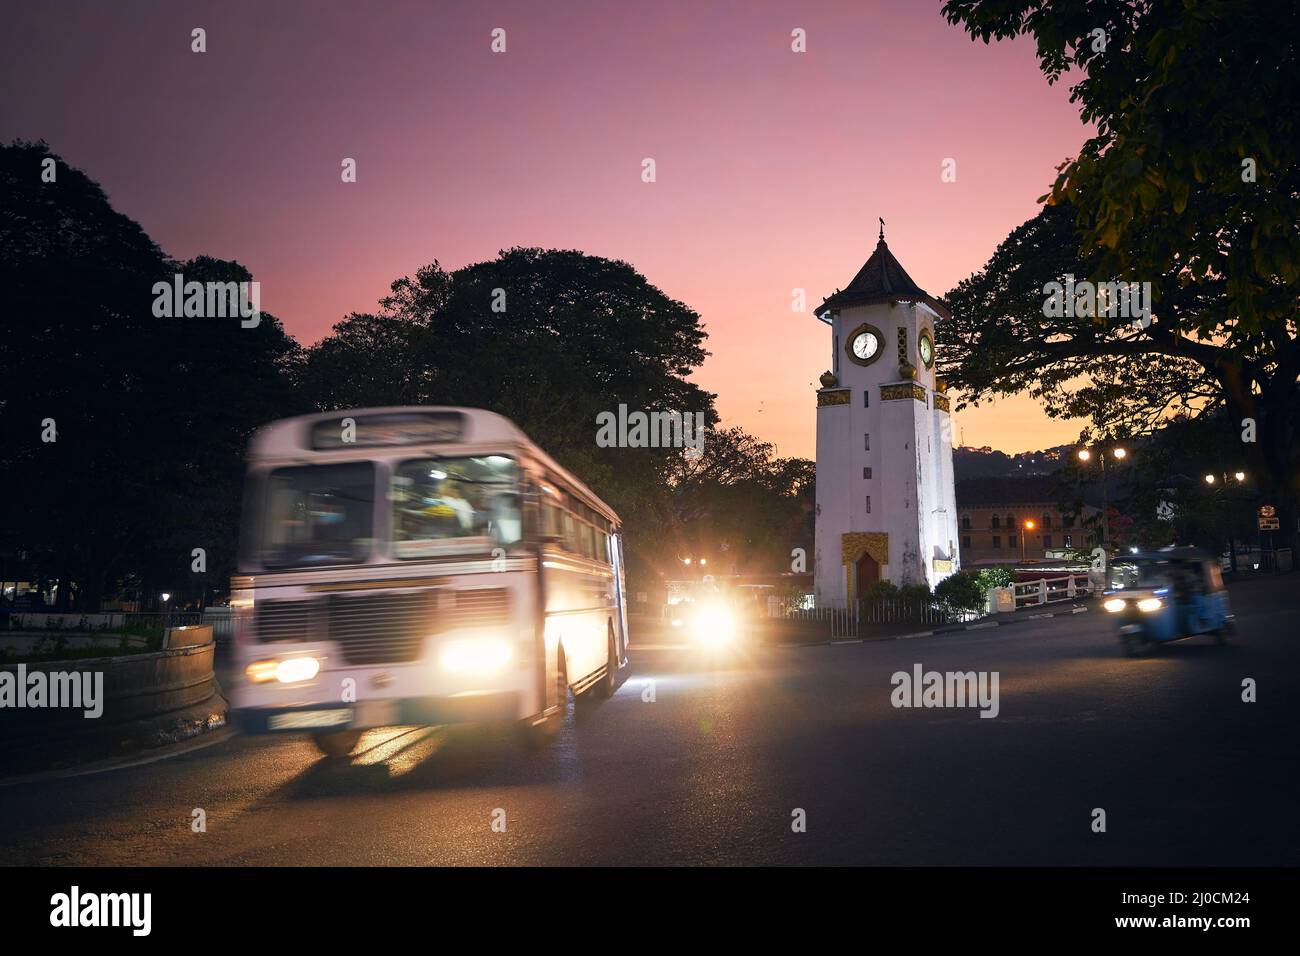 Bus et tuk tuk en mouvement flou au carrefour au beau coucher du soleil. Circulation autour de l'horloge tour dans la rue à Kandy, Sri Lanka. Banque D'Images